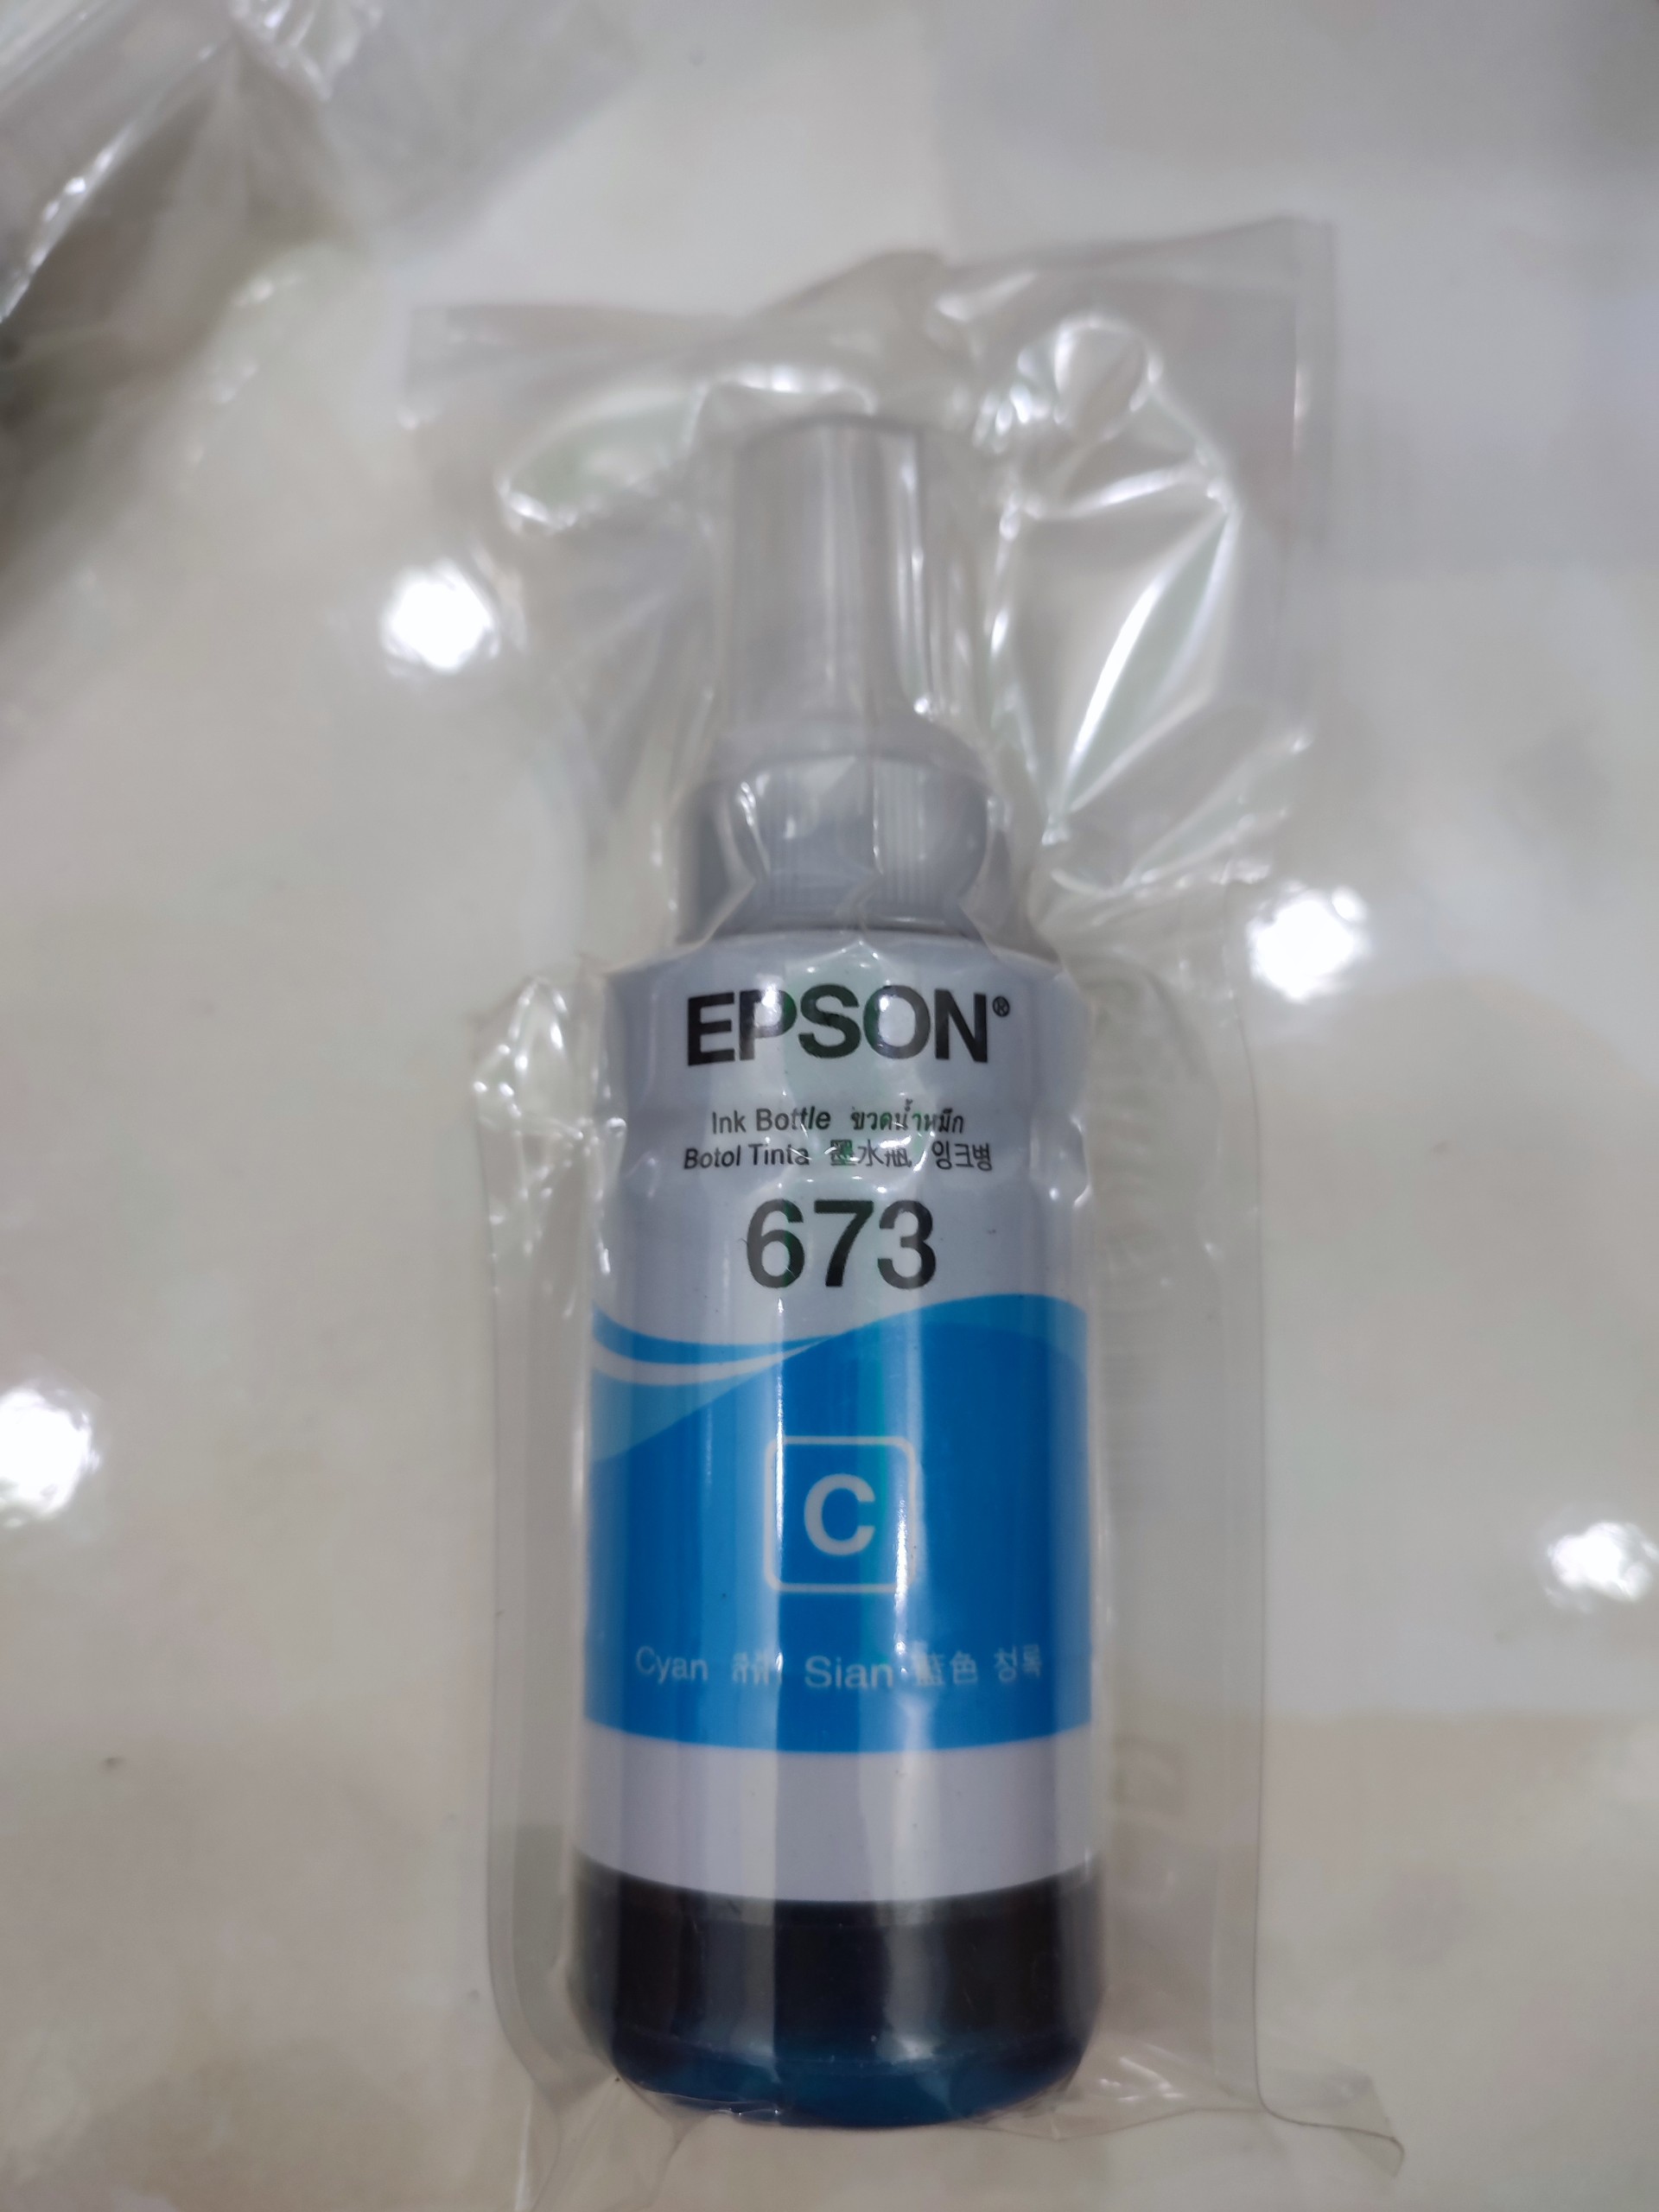 Mực Epson 673 màu xanh dành cho máy Epson L805 / L850 / L1800 / L810 / L800